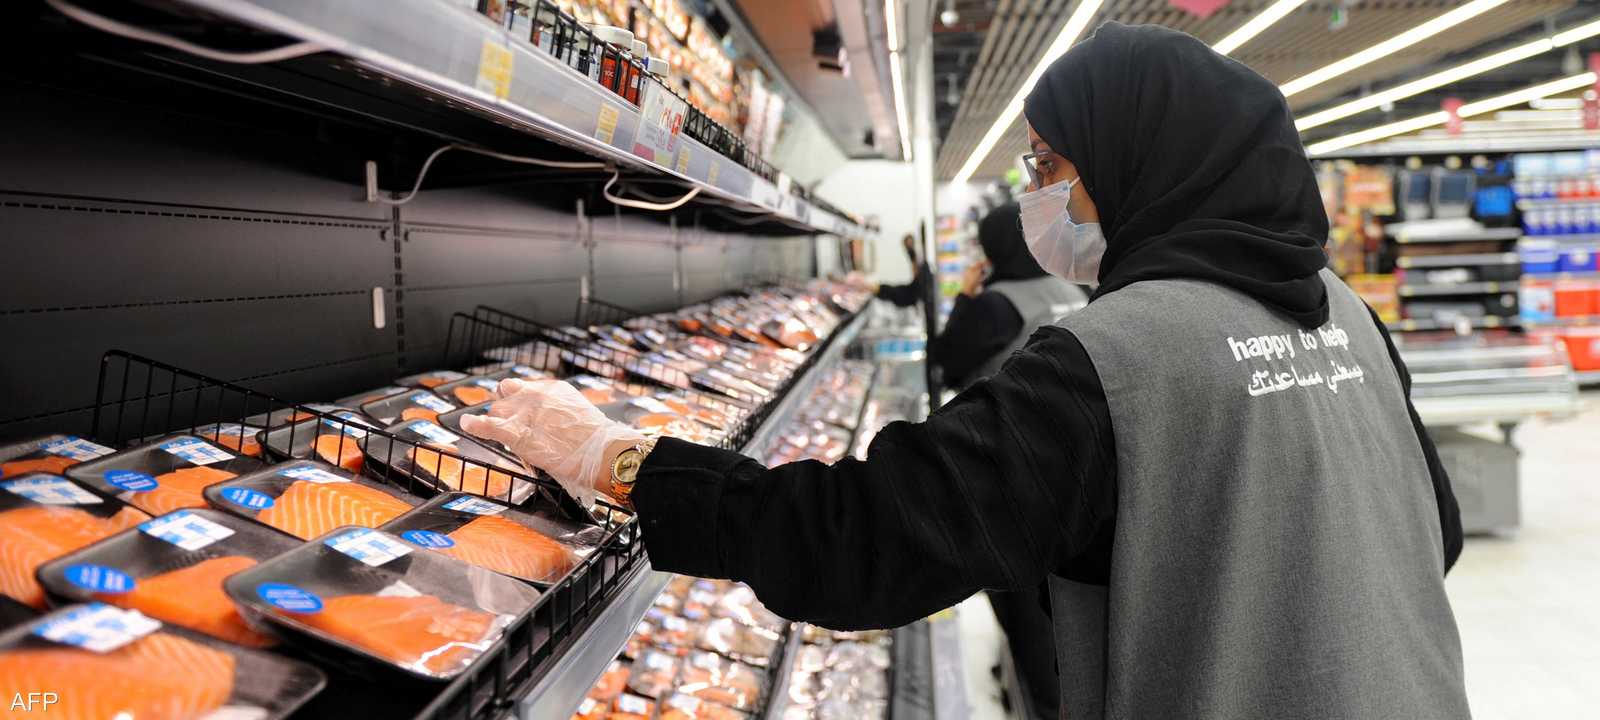 ارتفاع أسعار الغذاء يتباطأ في السعودية